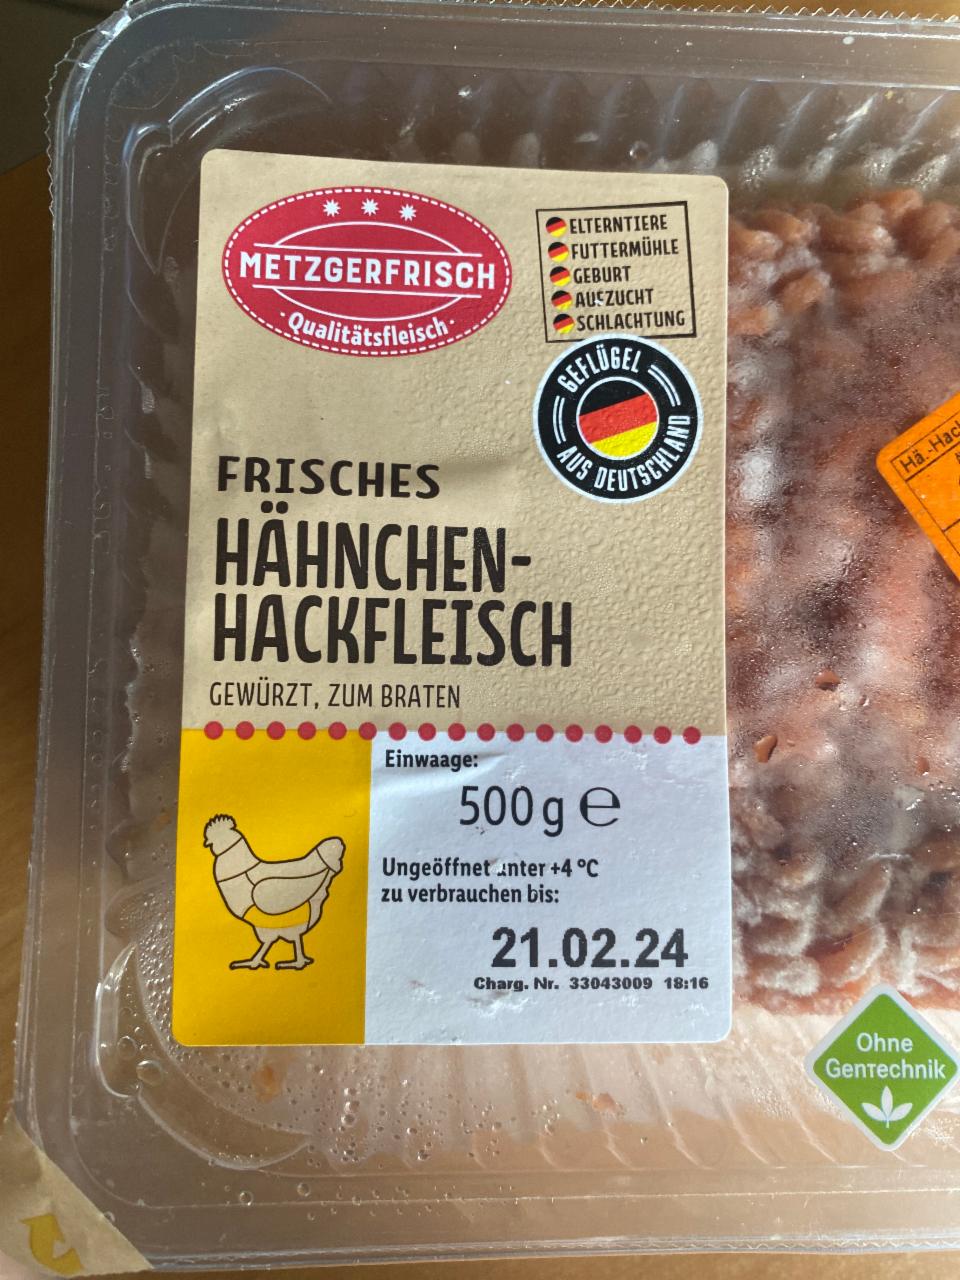 Фото - Frisches Hähnchen-hackfleisch Metzgerfrisch